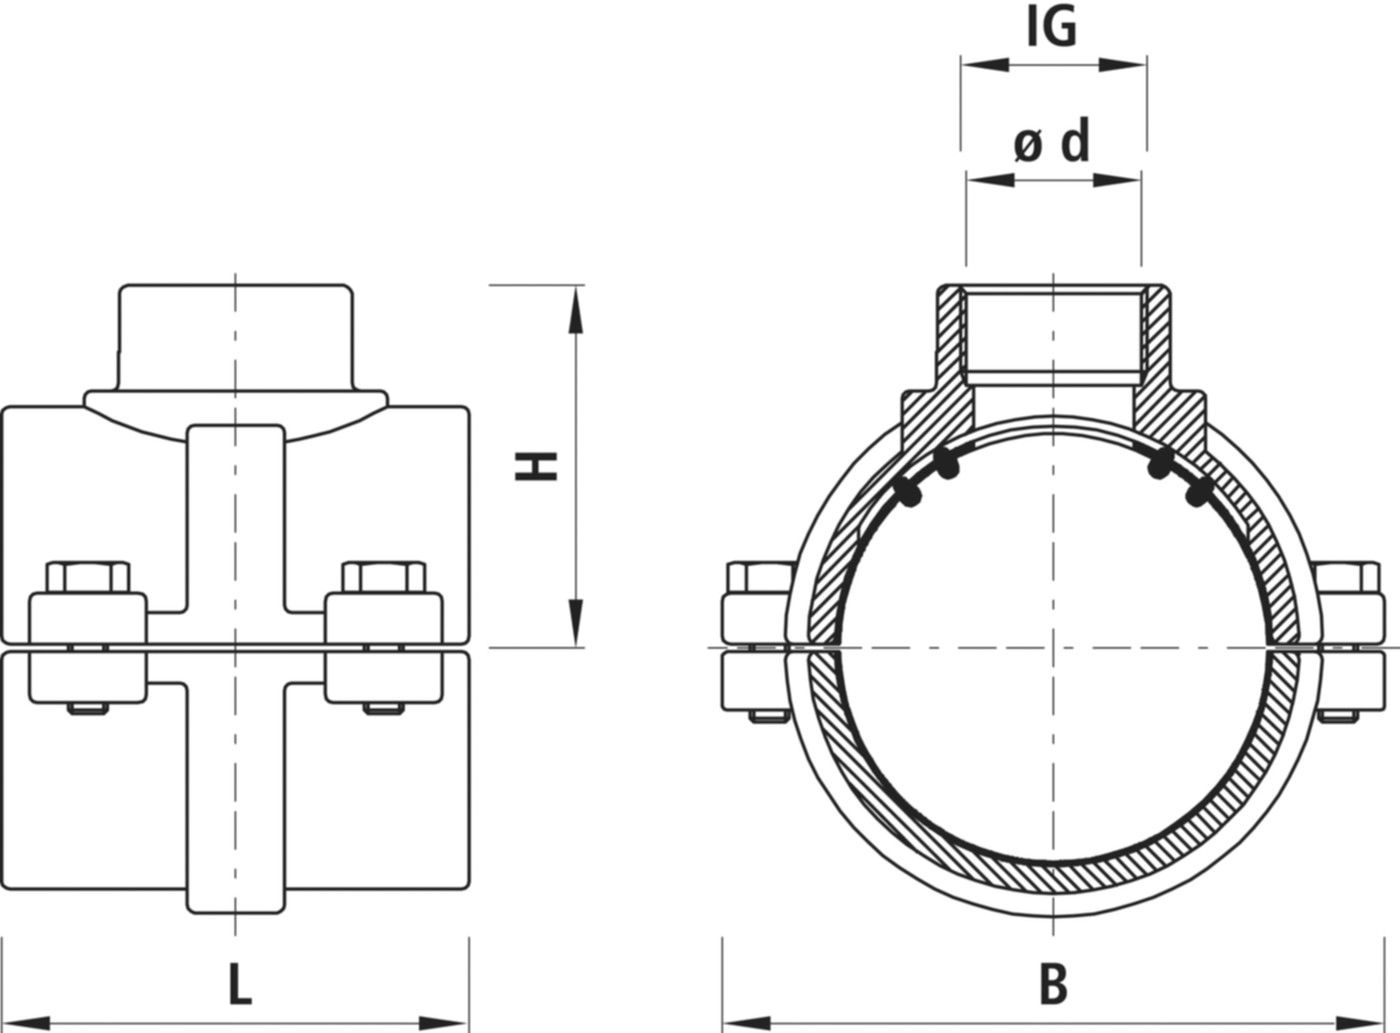 Haku-Anbohrschelle mit IG für Gas 5255 d 125mm - 1 1/4" - Hawle Hausanschluss- und Anbohrarmaturen